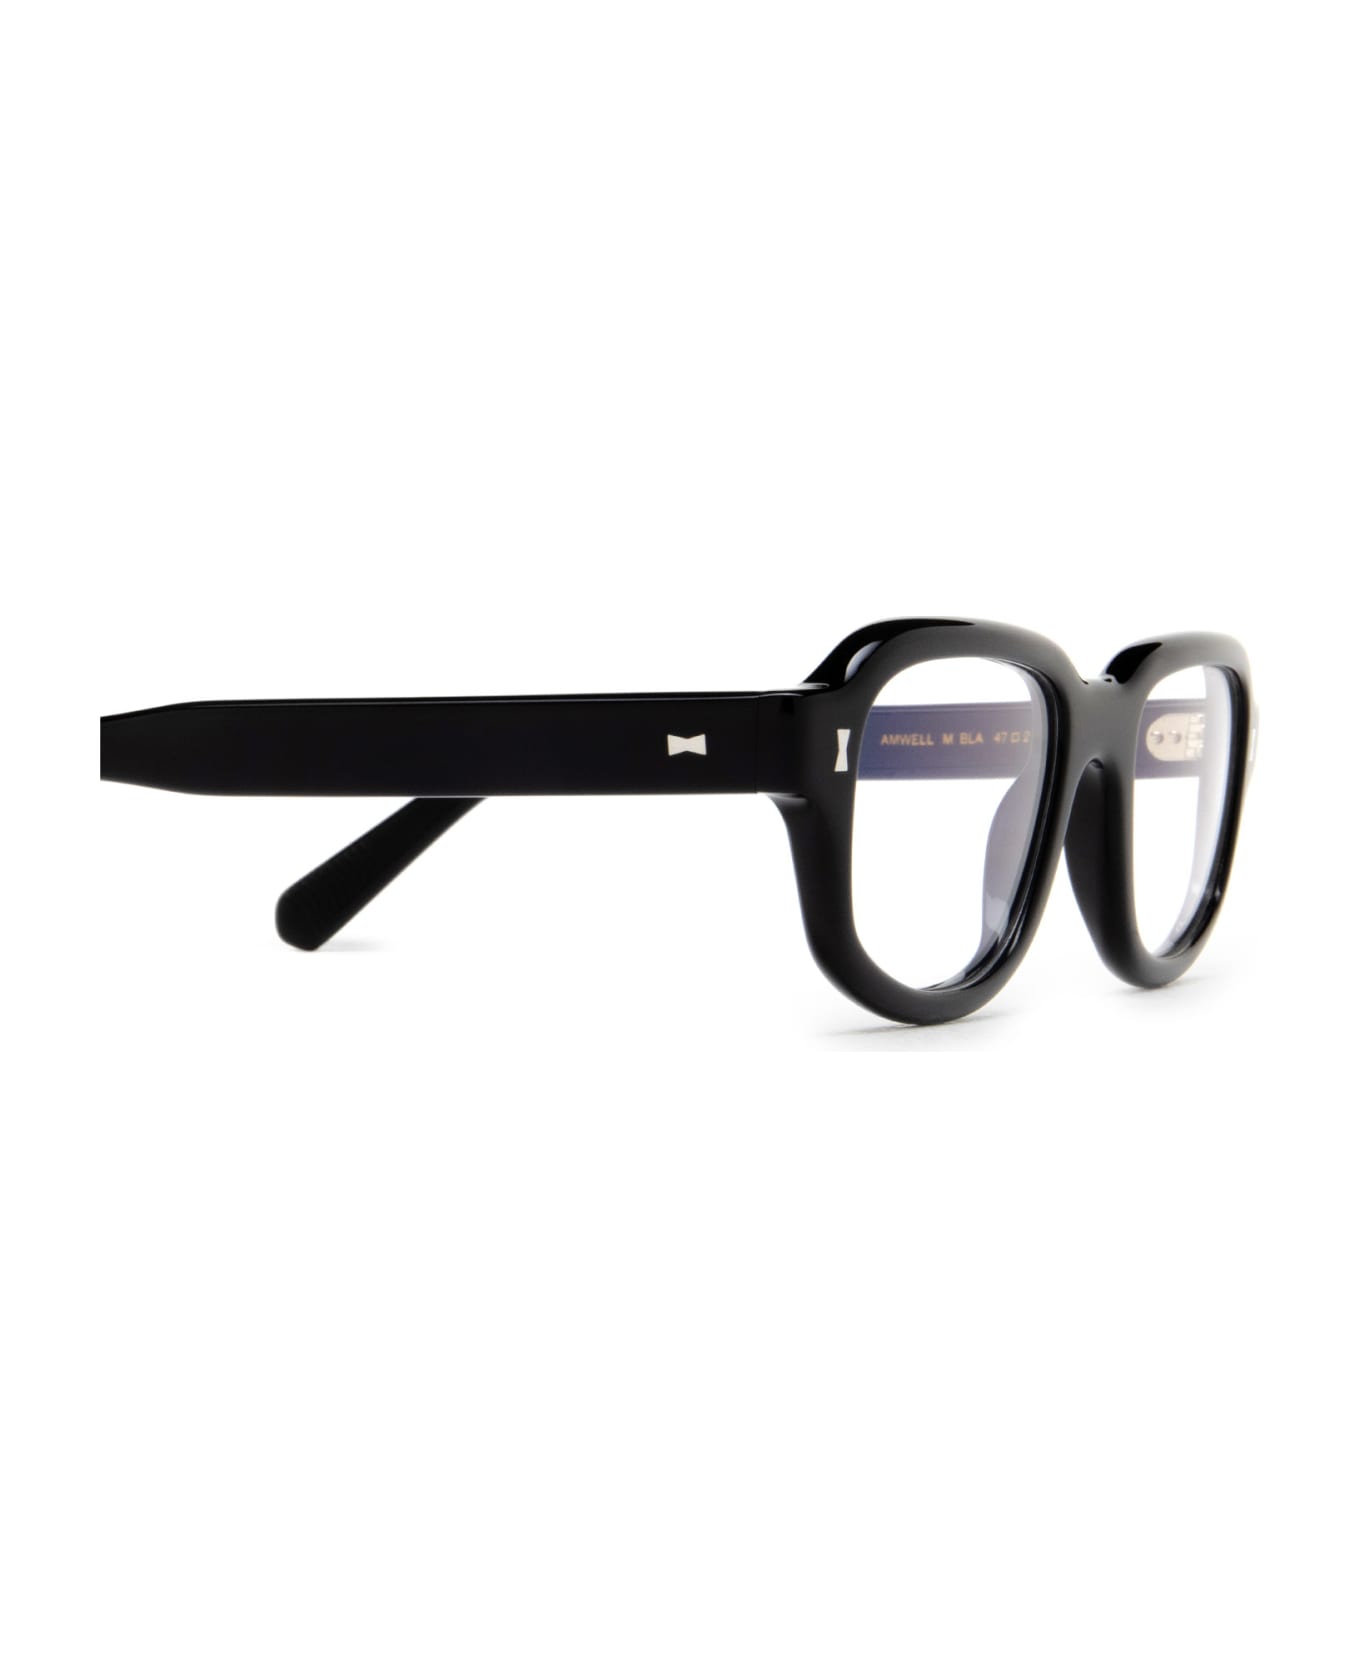 Cubitts Amwell Black Glasses - Black アイウェア